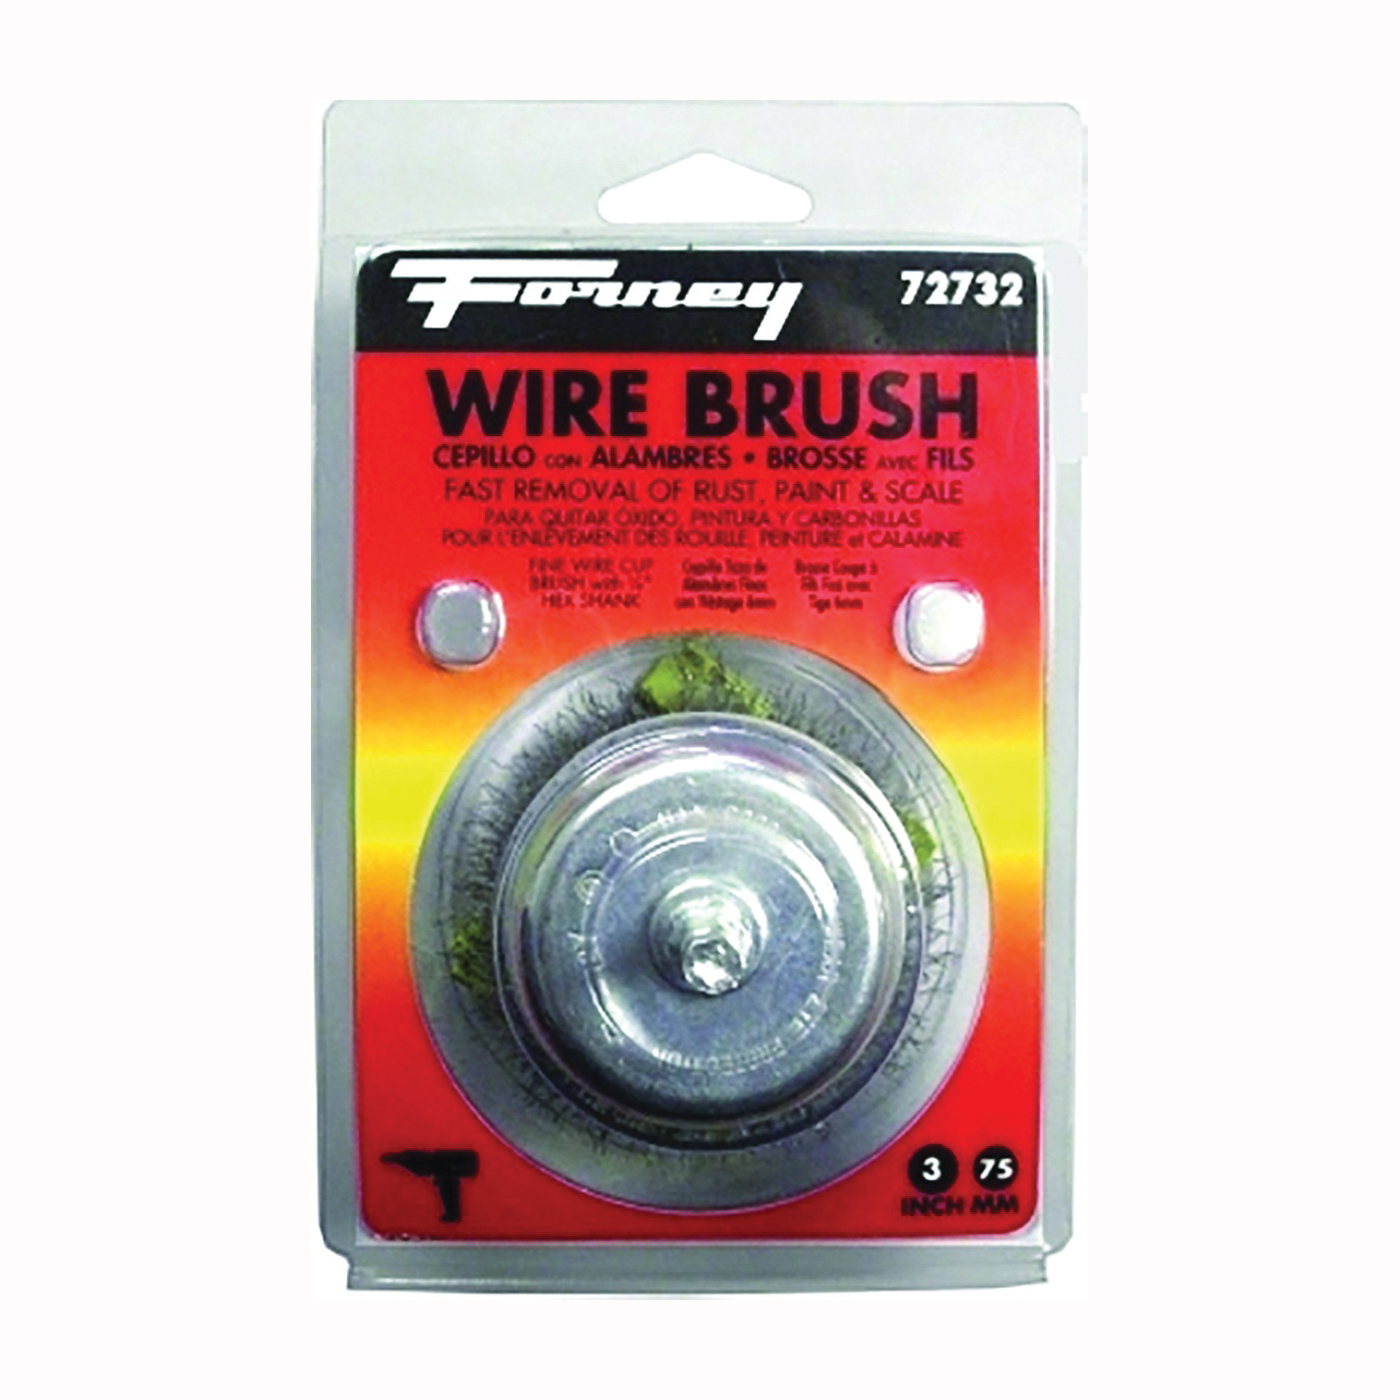 72732 Wire Cup Brush, 3 in Dia, 0.008 in Dia Bristle, Steel Bristle